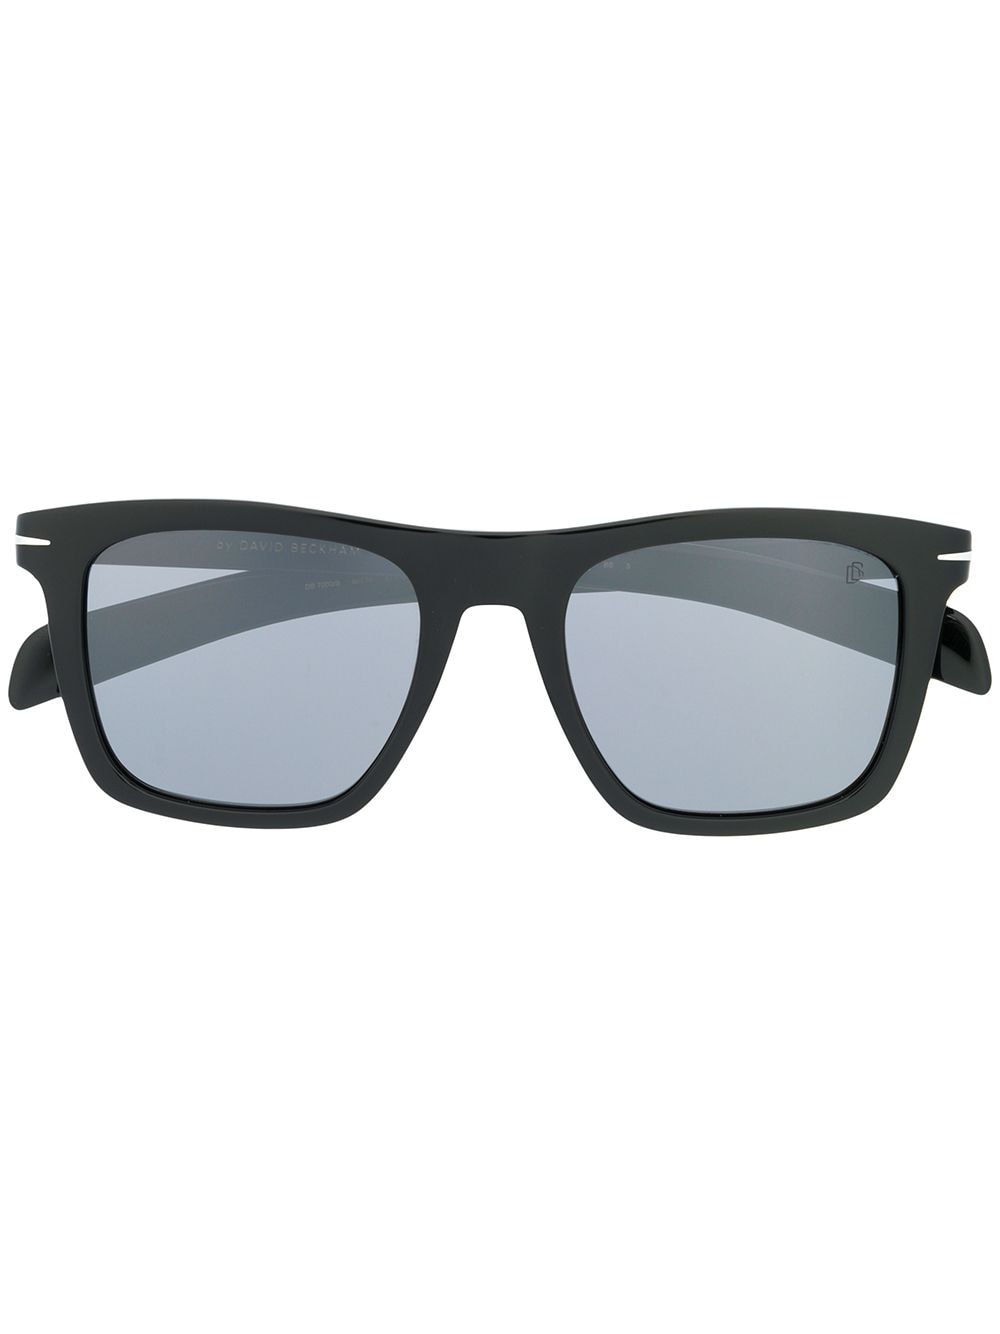 Eyewear by David Beckham rectangular frame sunglasses - Black von Eyewear by David Beckham